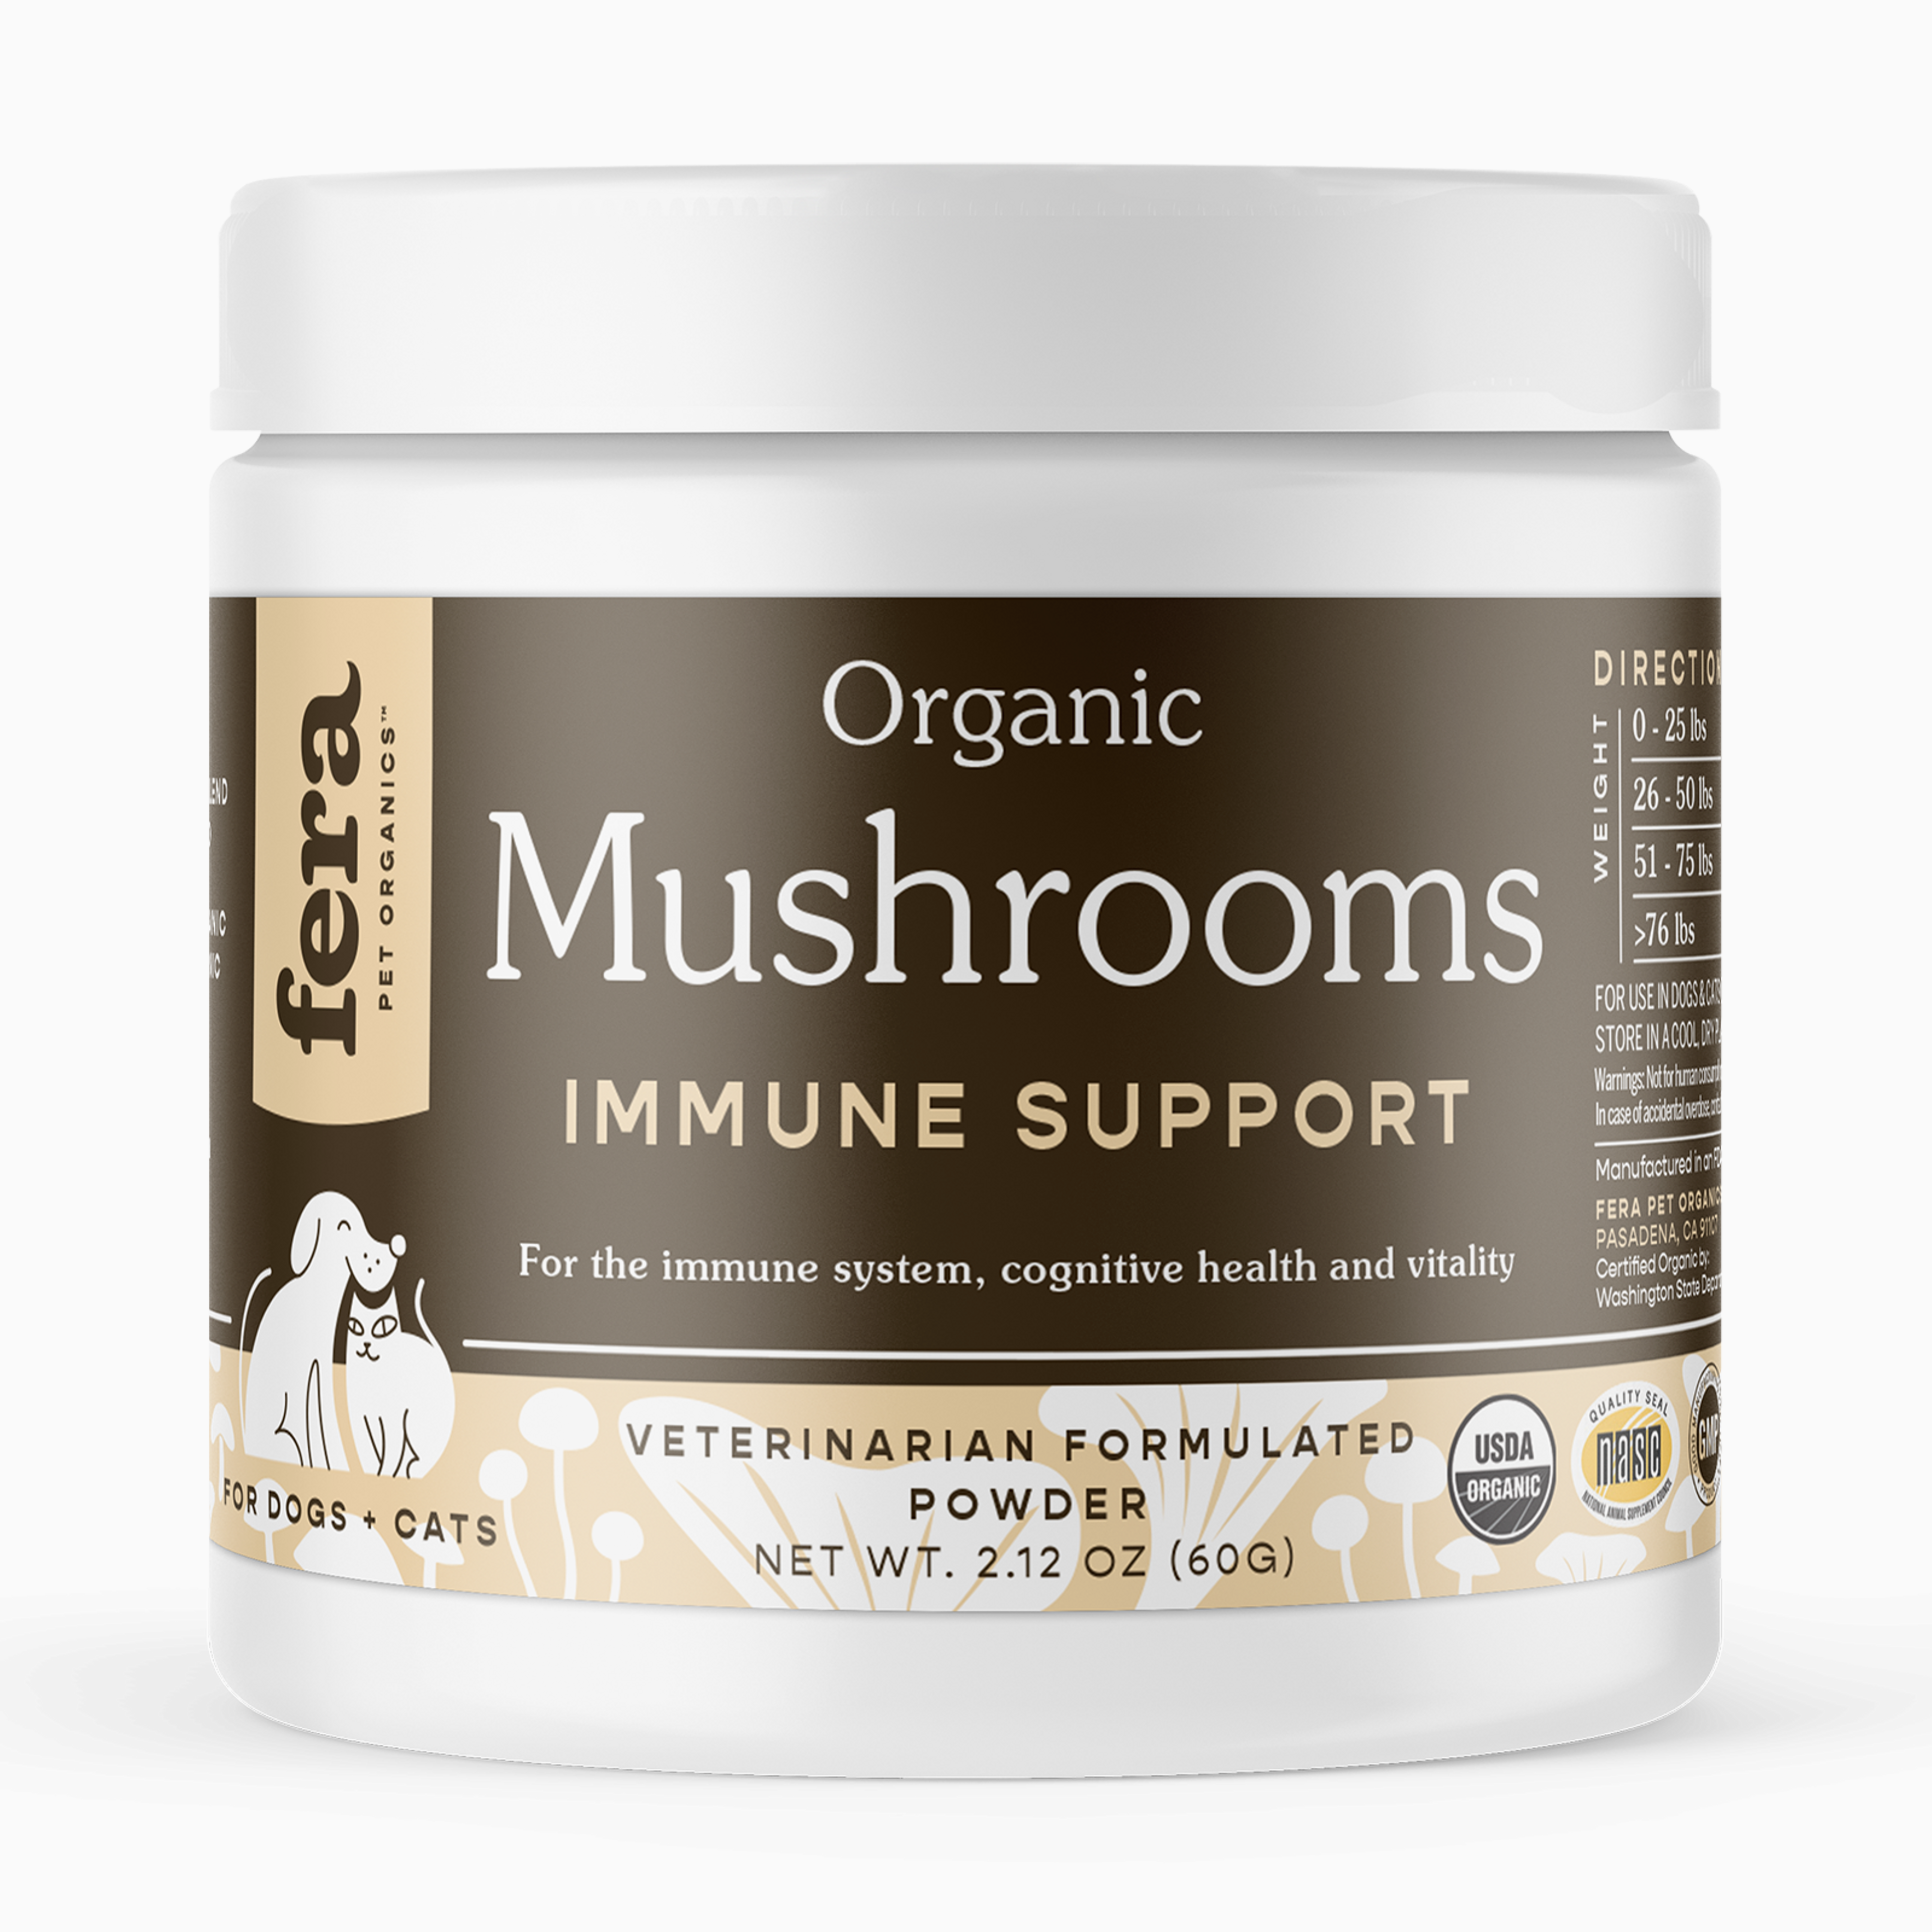 USDA Organic Mushroom Blend for Immune Support